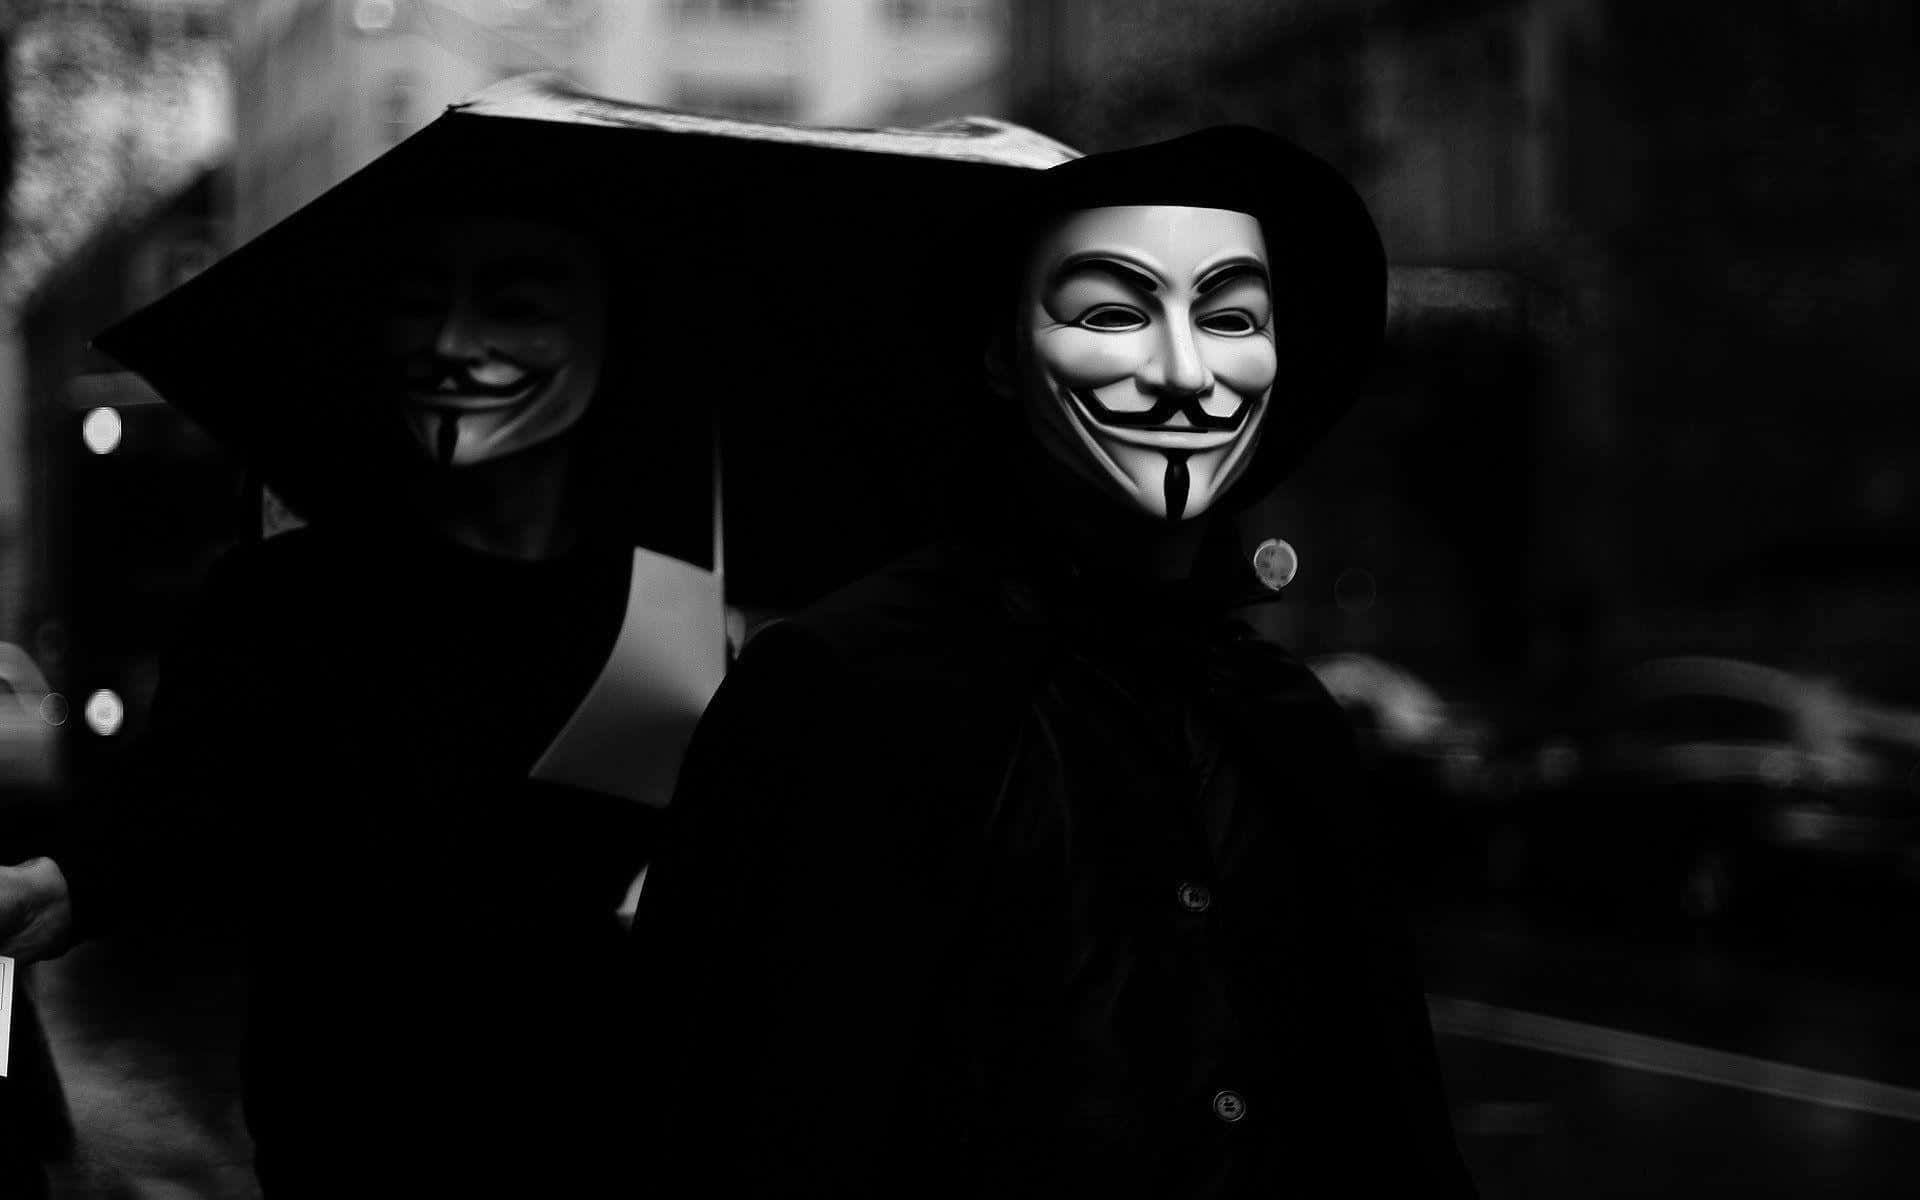 Anonymfolkets Ansikte